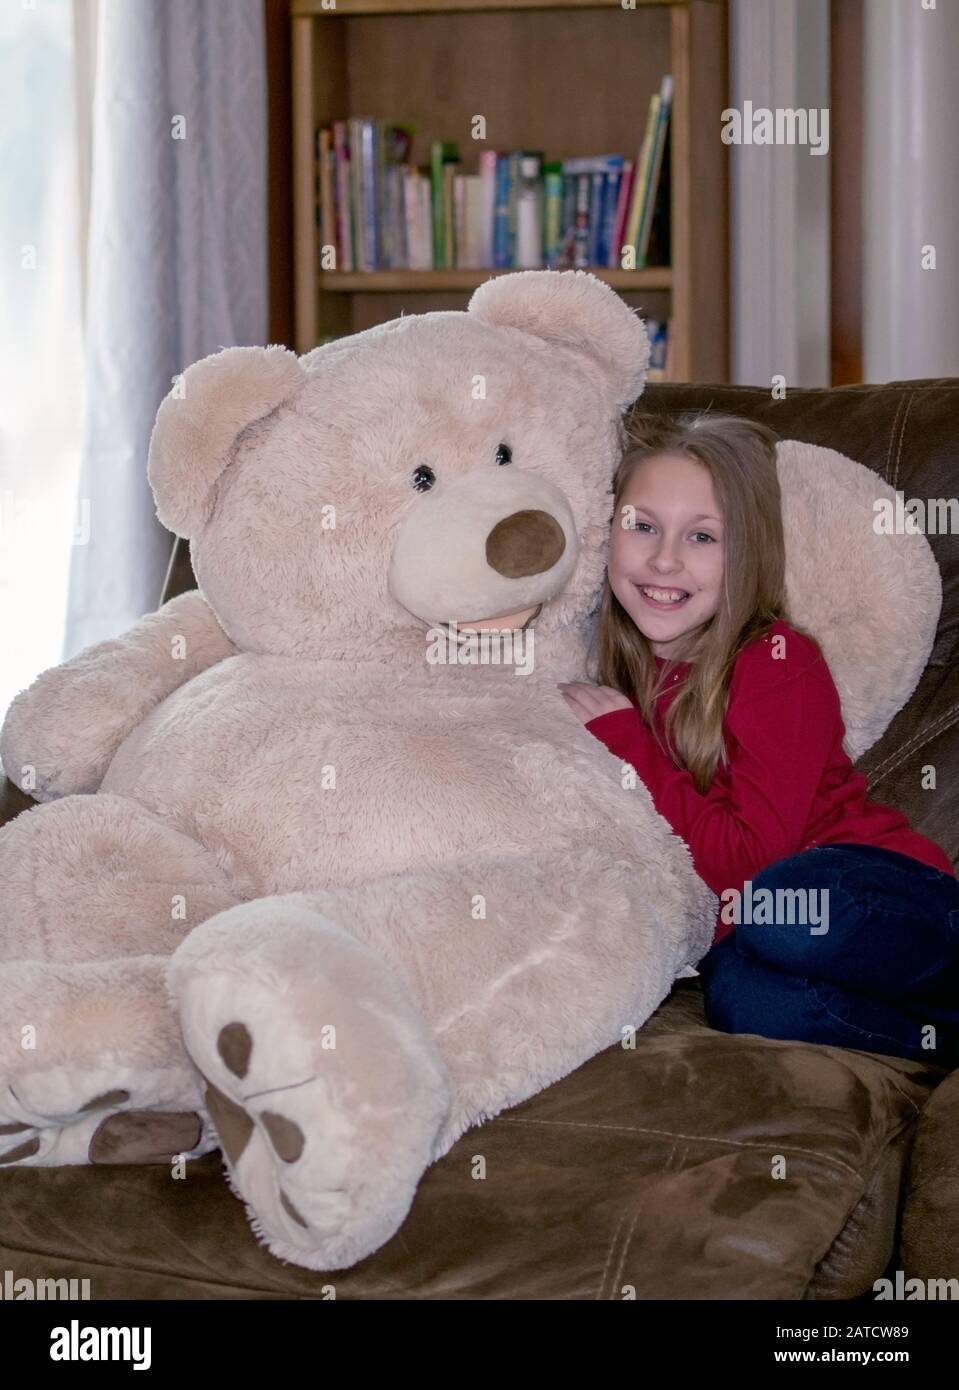 Girl cuddles with a giant teddy bear on the sofa Stock Photo